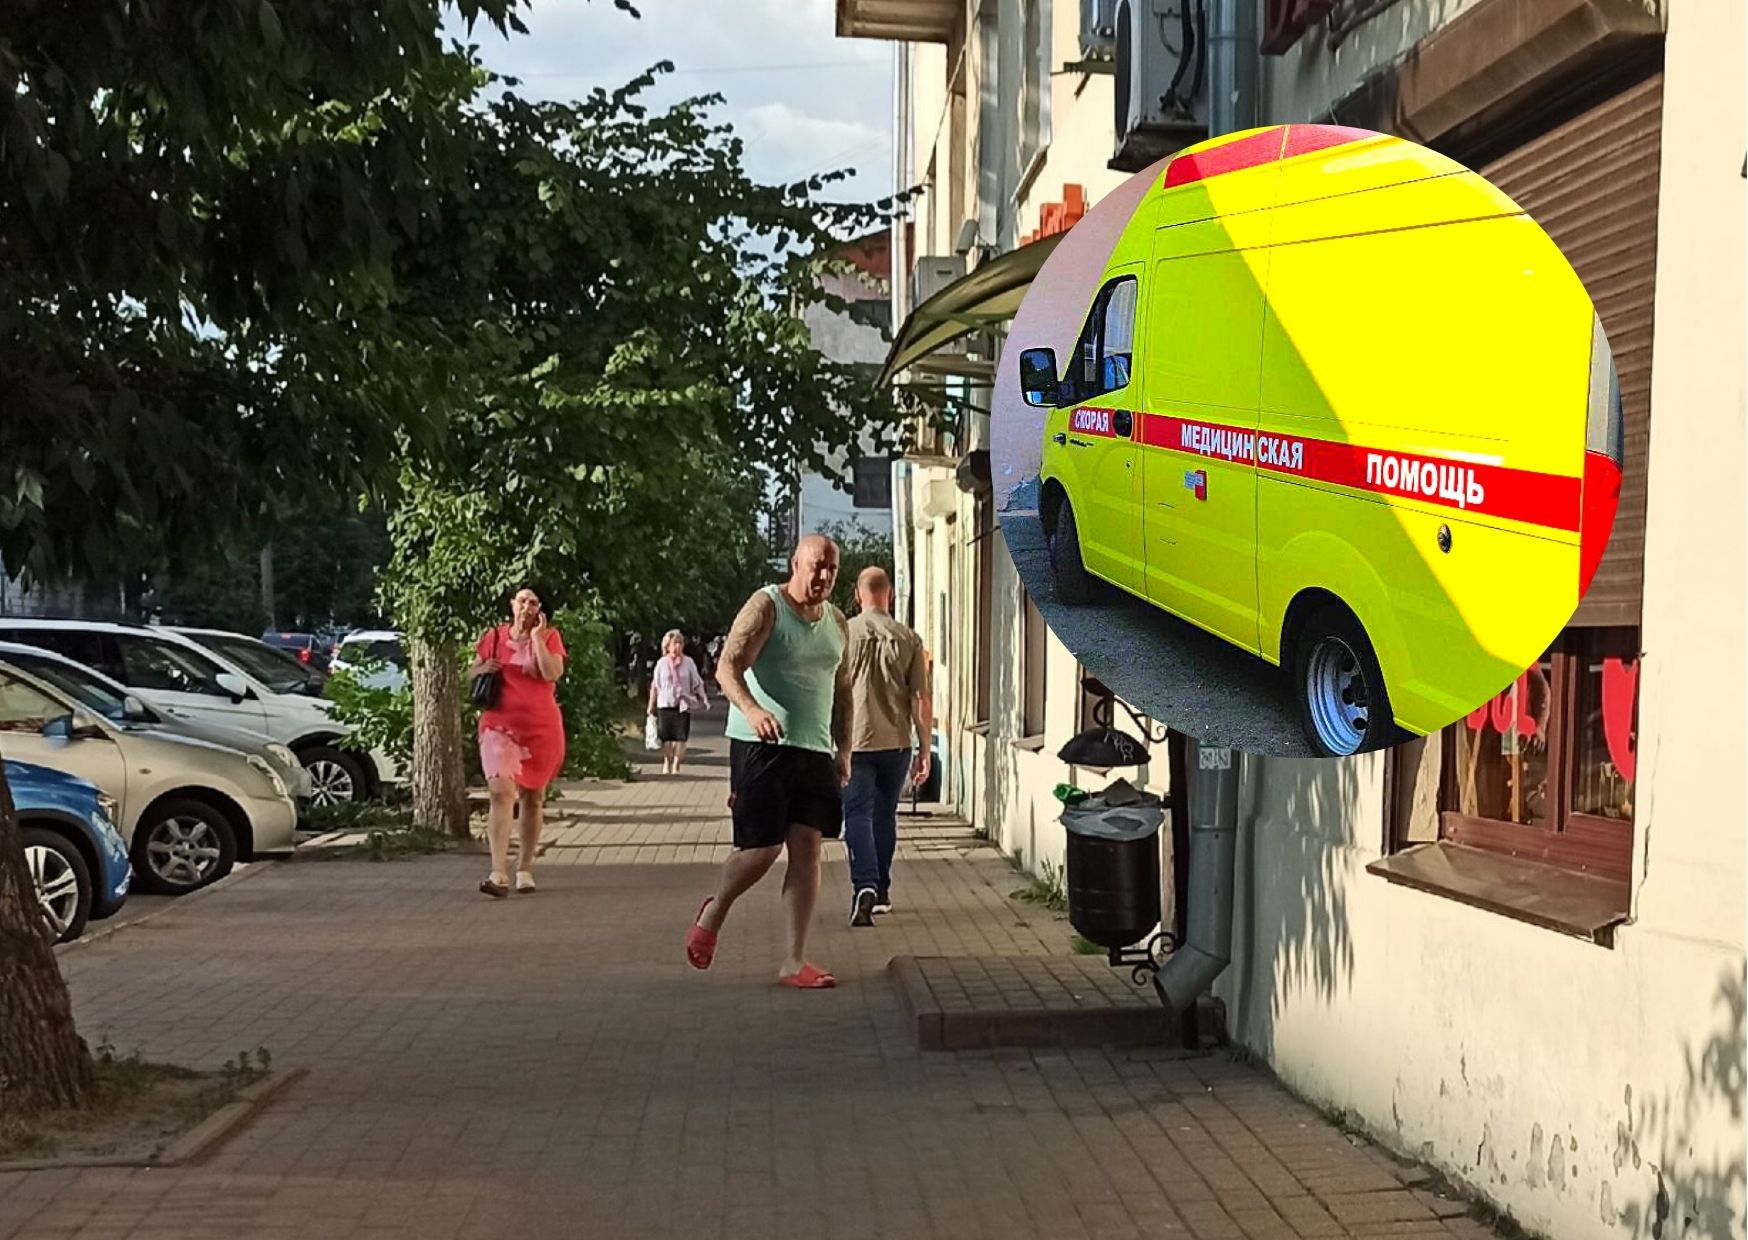 Нападение на скорую в Ярославле: друзья тащили в машину сопротивляющегося пациента